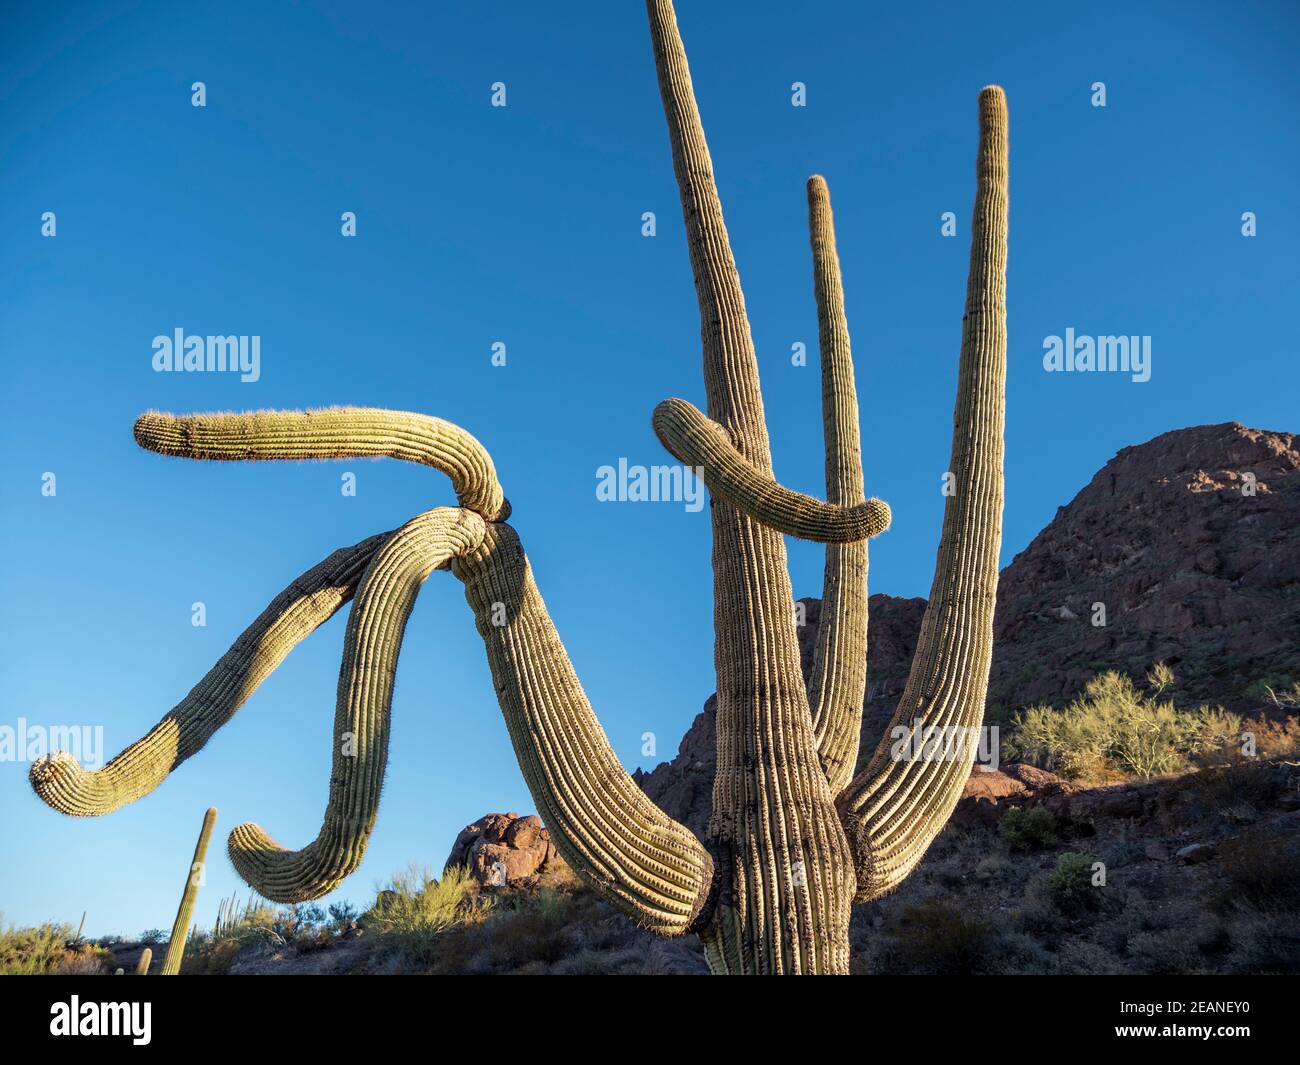 Saguaro cactus (Carnegiea gigantea), Organ Pipe Cactus National Monument, Sonoran Desert, Arizona, États-Unis d'Amérique, Amérique du Nord Banque D'Images